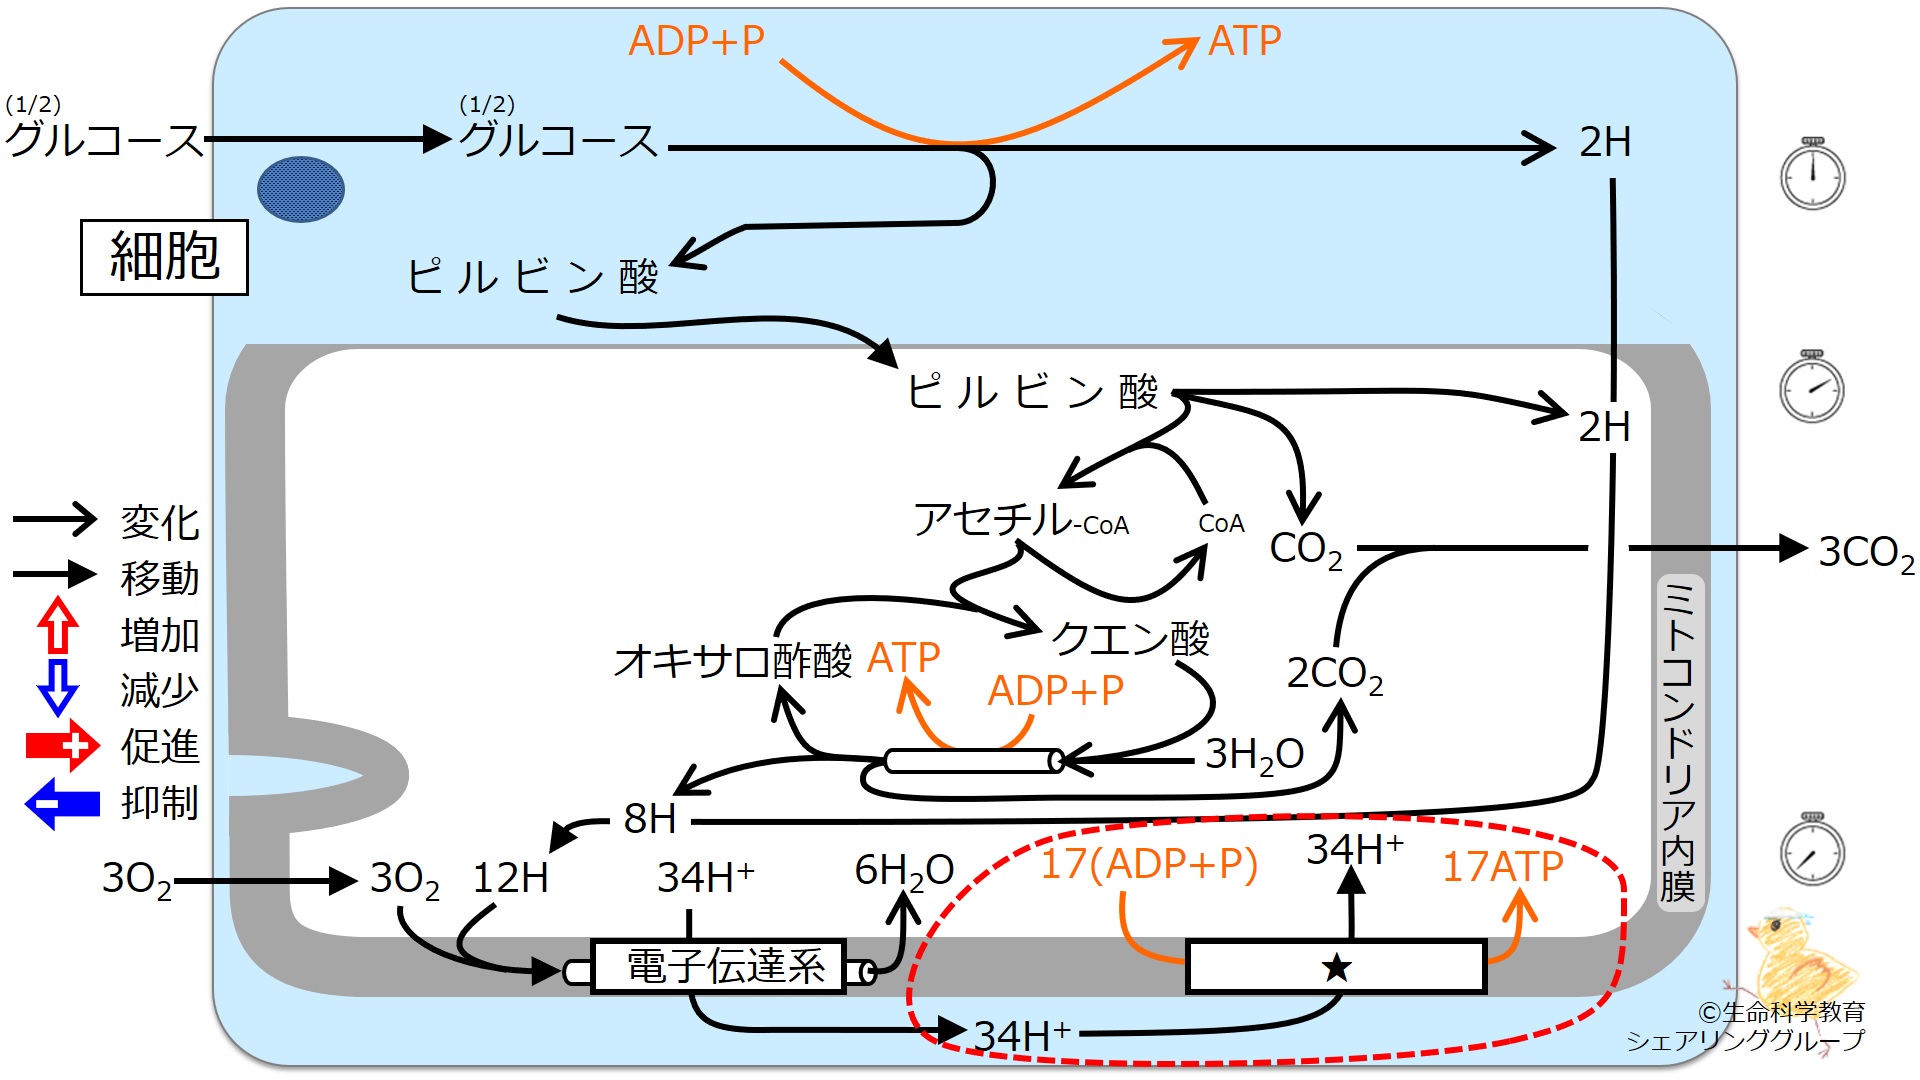 ./images/クイズ_ATP合成酵素.jpg